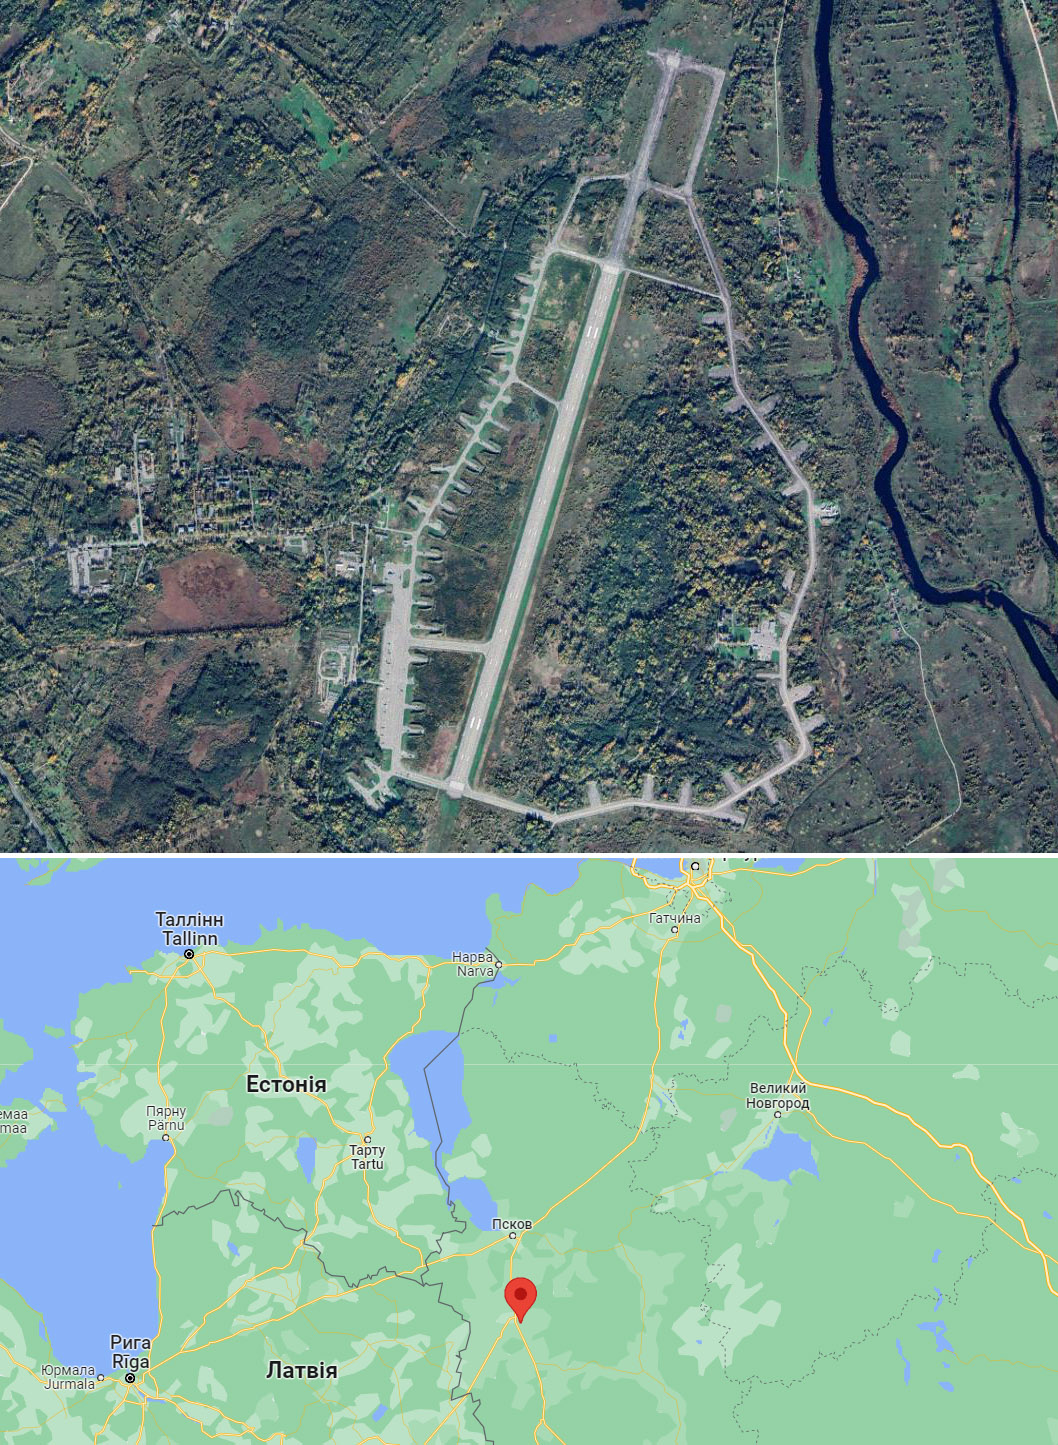 Авіабаза "Веретье" знаходиться поблизу міста Остров у 30 км від кордону з Латвією